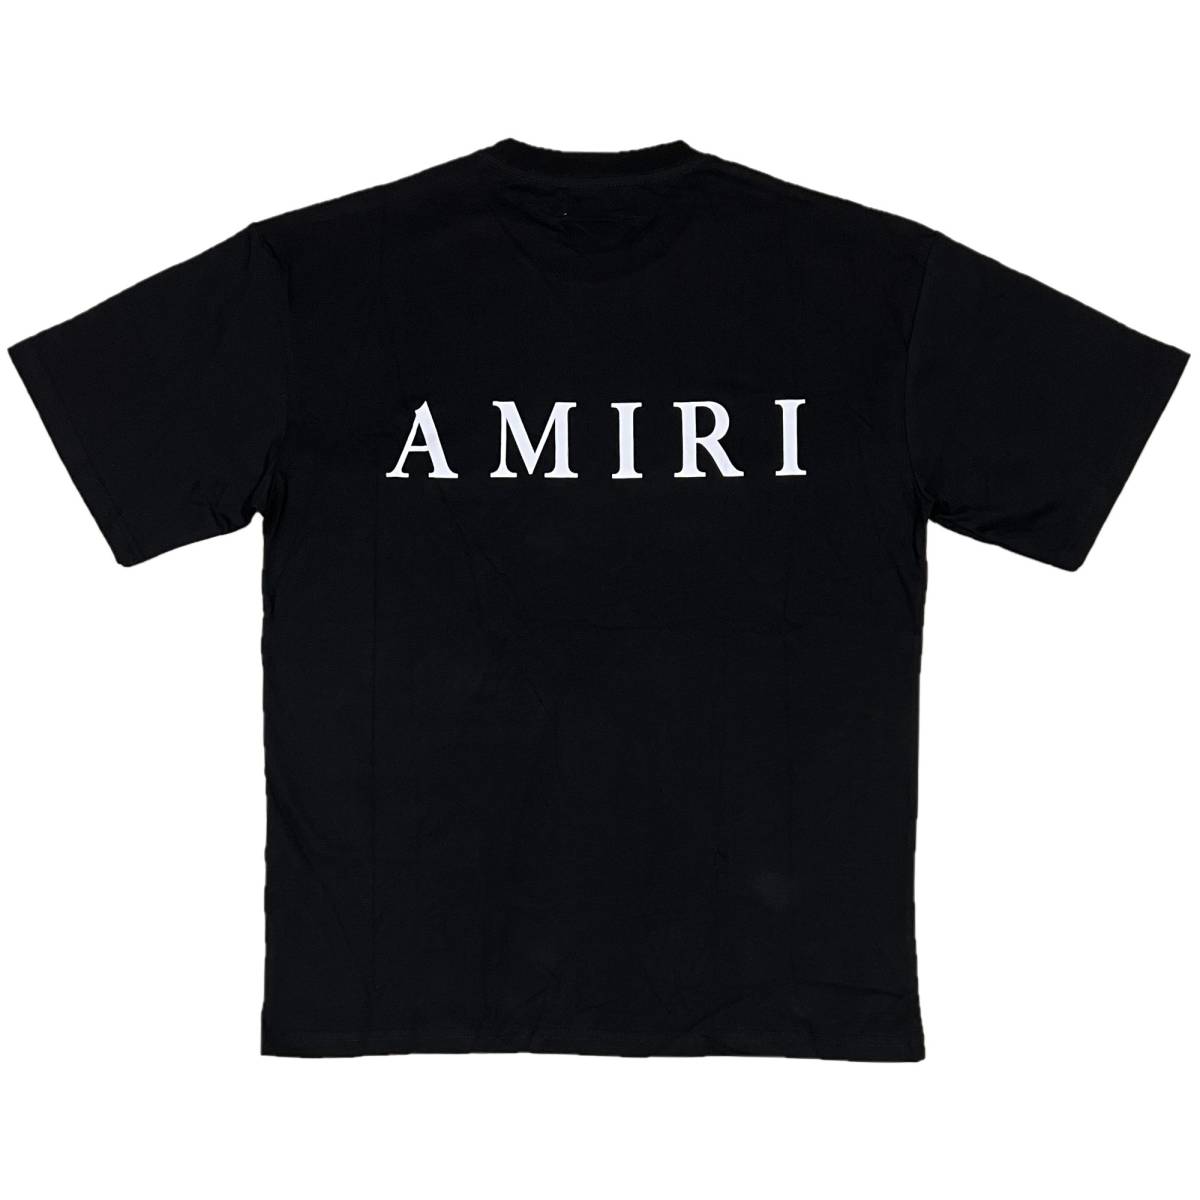 [並行輸入品] AMIRI アミリ MA CORE ロゴ 半袖 Tシャツ (ブラック) (L)